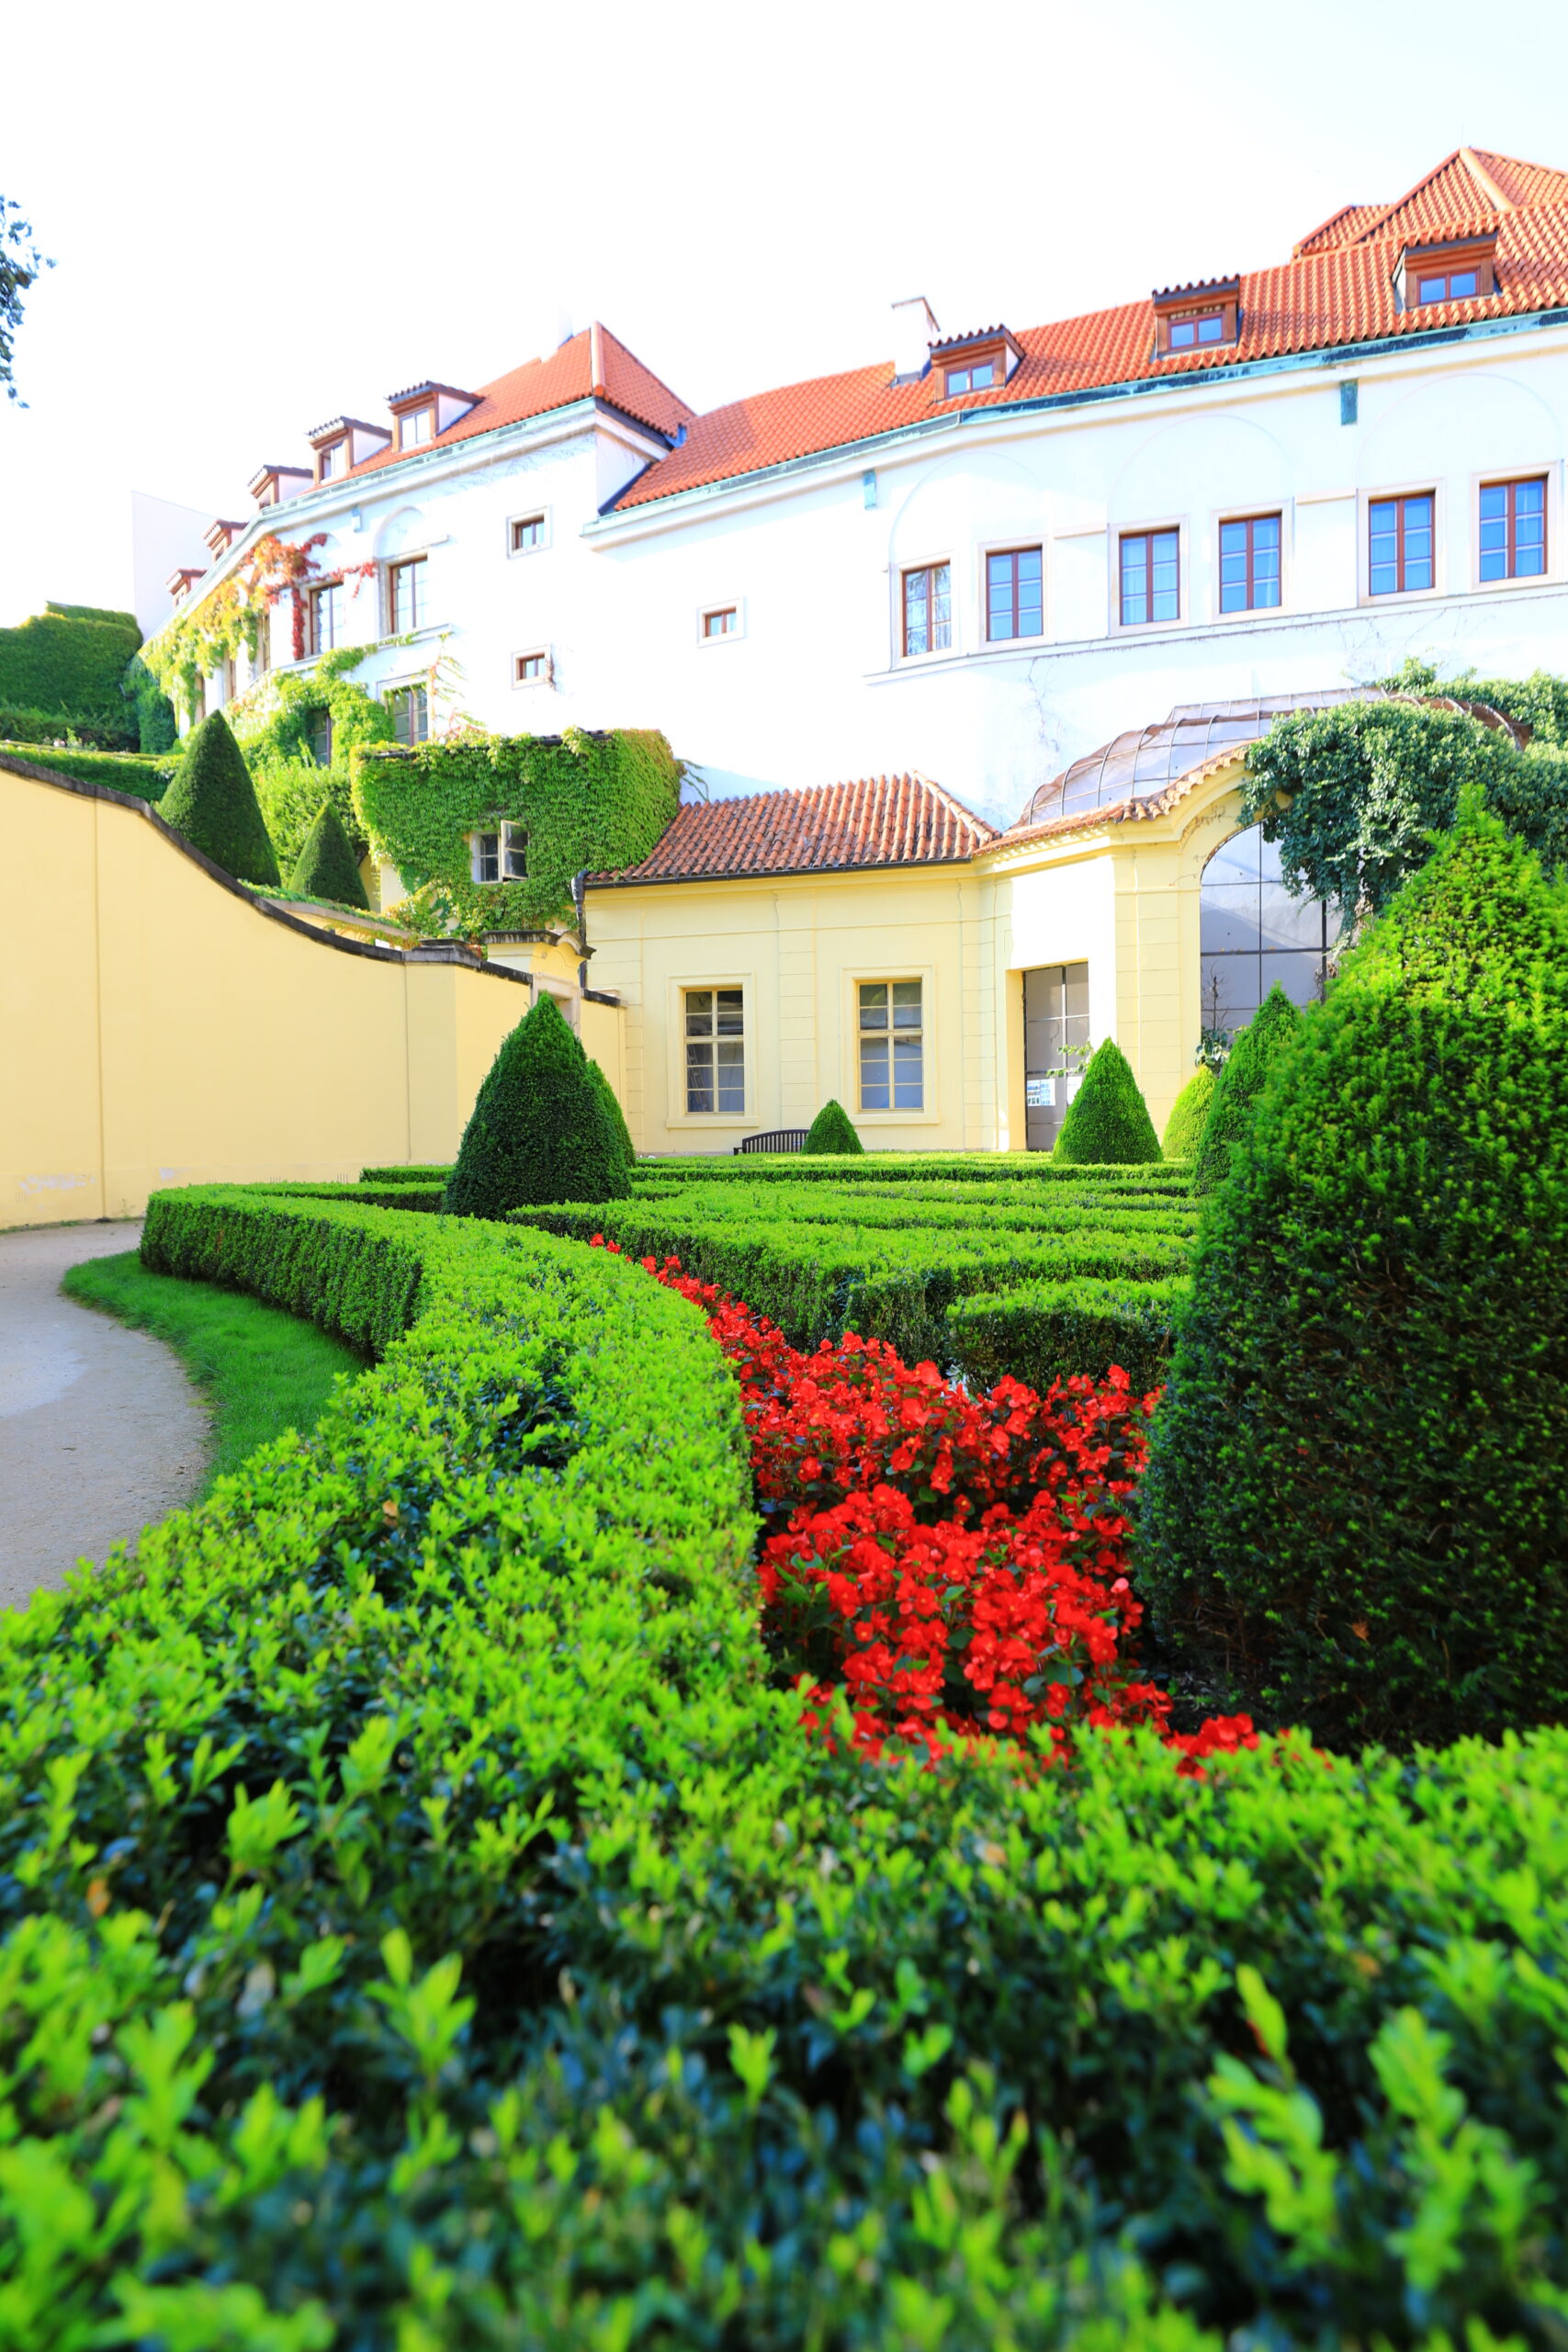 布拉格最美庭園｜維巴庭園Vrtbovská zahrada，周杰倫婚紗取景地，票選中歐最美庭園，聯合國教科文組織世界文化遺產名錄